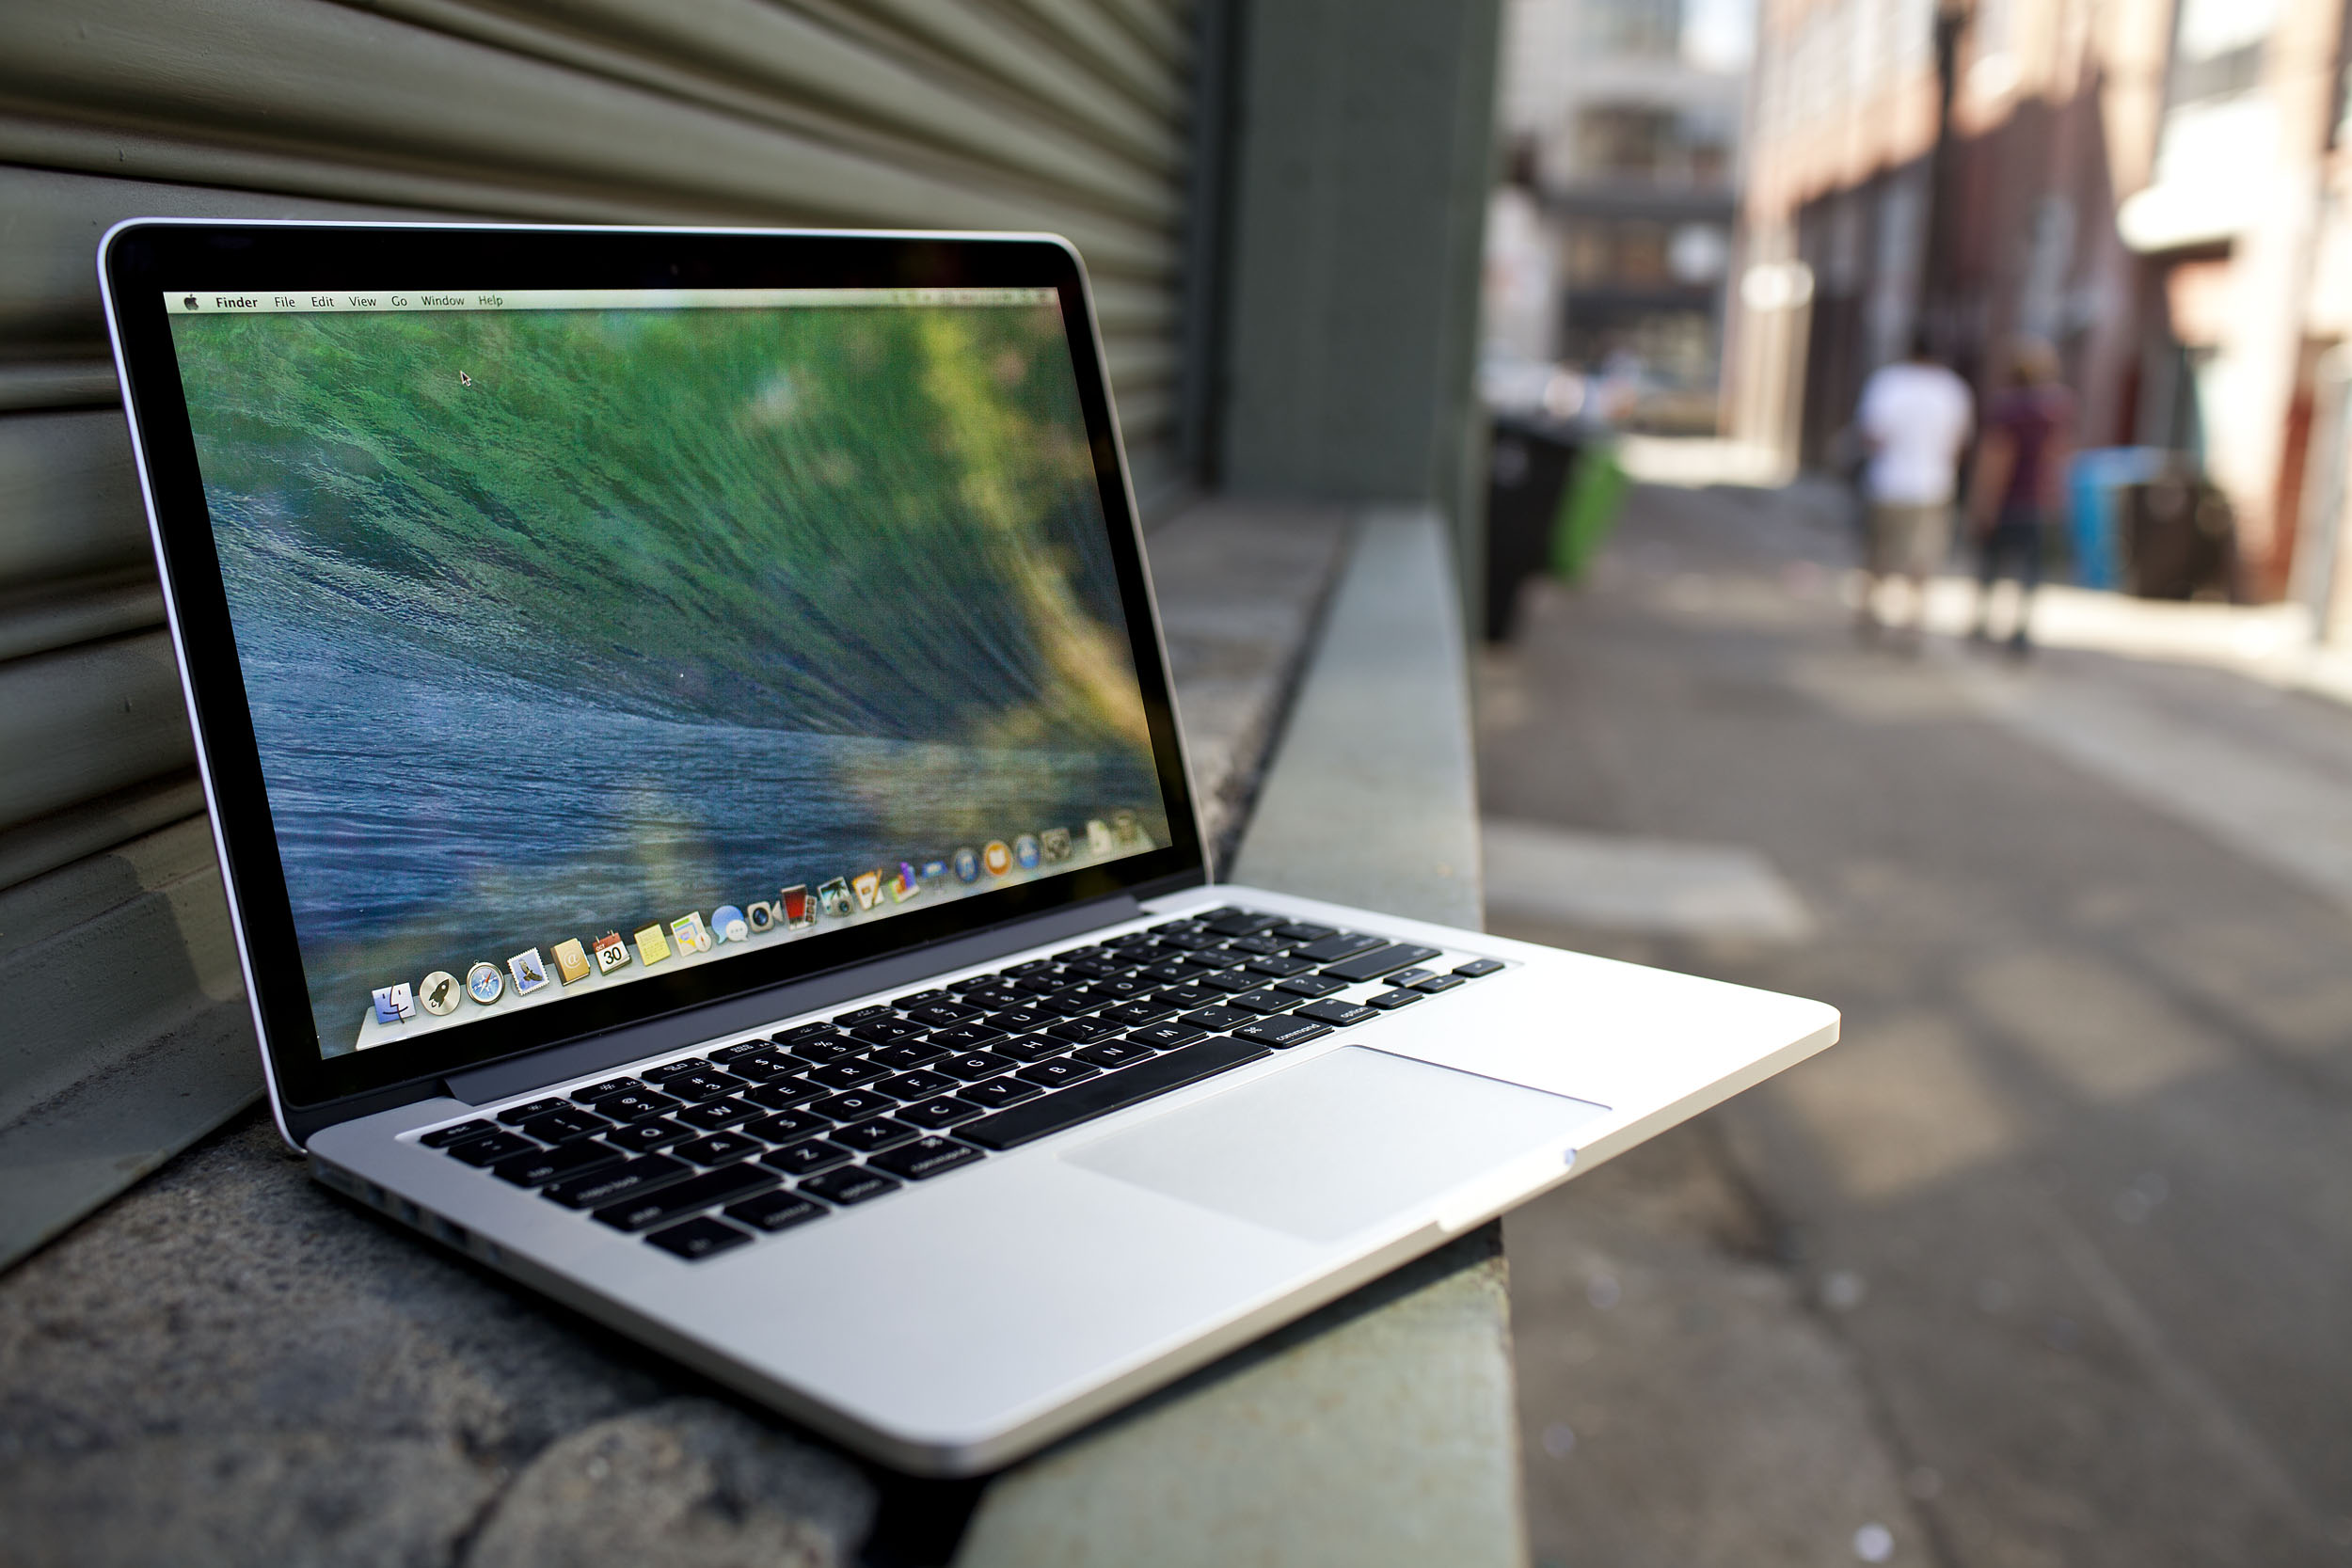 MacBook Pro 2015 Wallpapers - WallpaperSafari